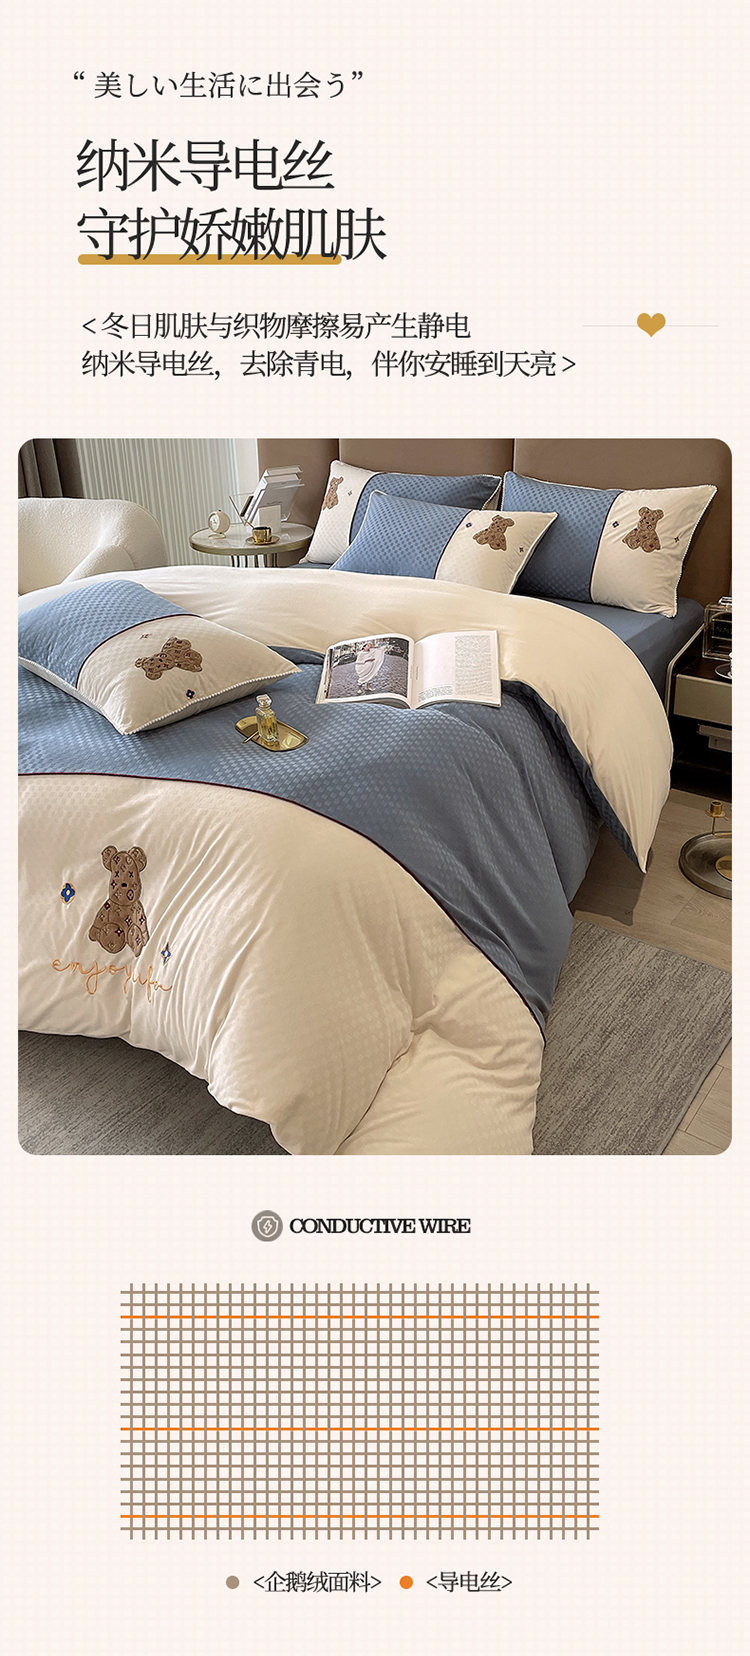 澳西奴 轻奢风企鹅绒刺绣四件套 秋冬季保 暖床品套件双面面料设计 被套床单枕套1.5/1.8米床